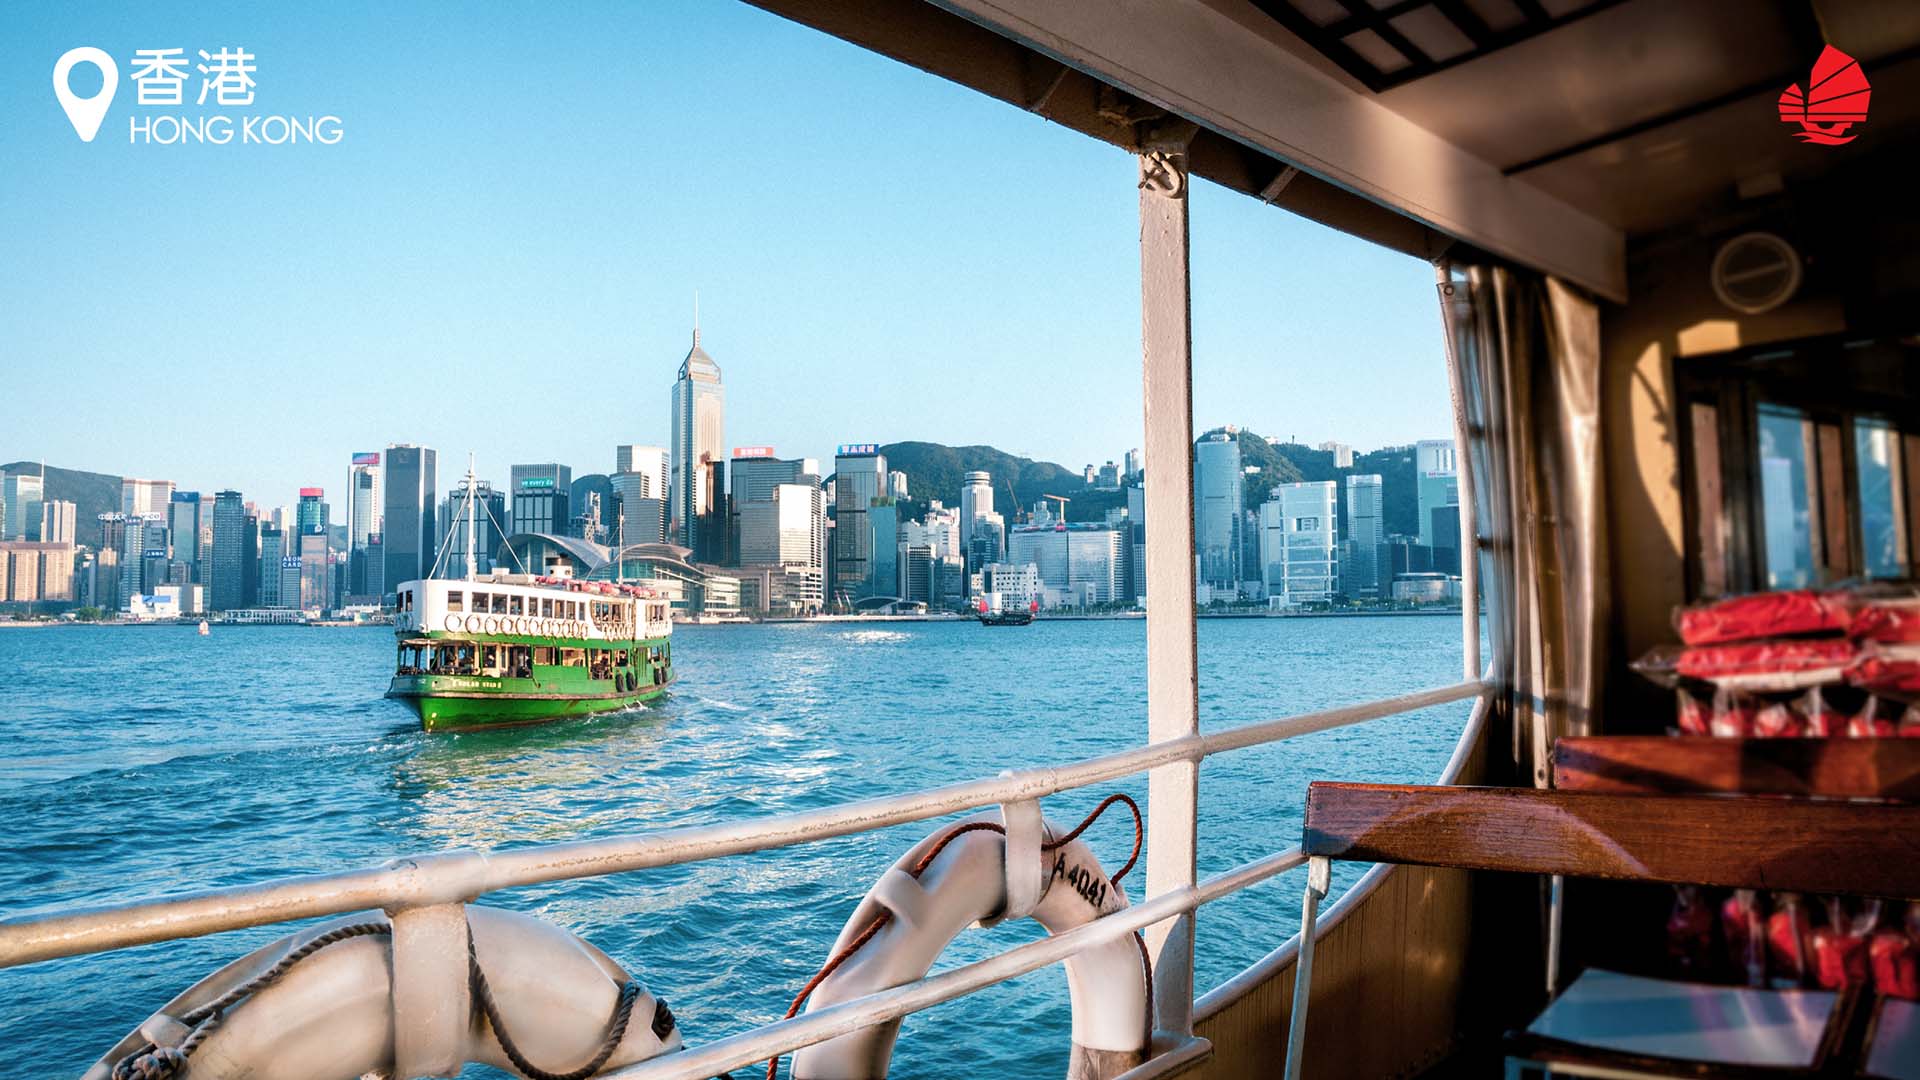 Khám phá tinh túy của Hong Kong với bộ sưu tập ảnh nền ảo đầy màu sắc và độc đáo. Từ các phố đi bộ đến tòa nhà chọc trời, tất cả đều được tái hiện sống động trong những bức ảnh tuyệt đẹp này. Cùng Sở Du lịch Hong Kong khám phá nét độc đáo của thành phố này qua ảnh nền đặc trưng nhất.